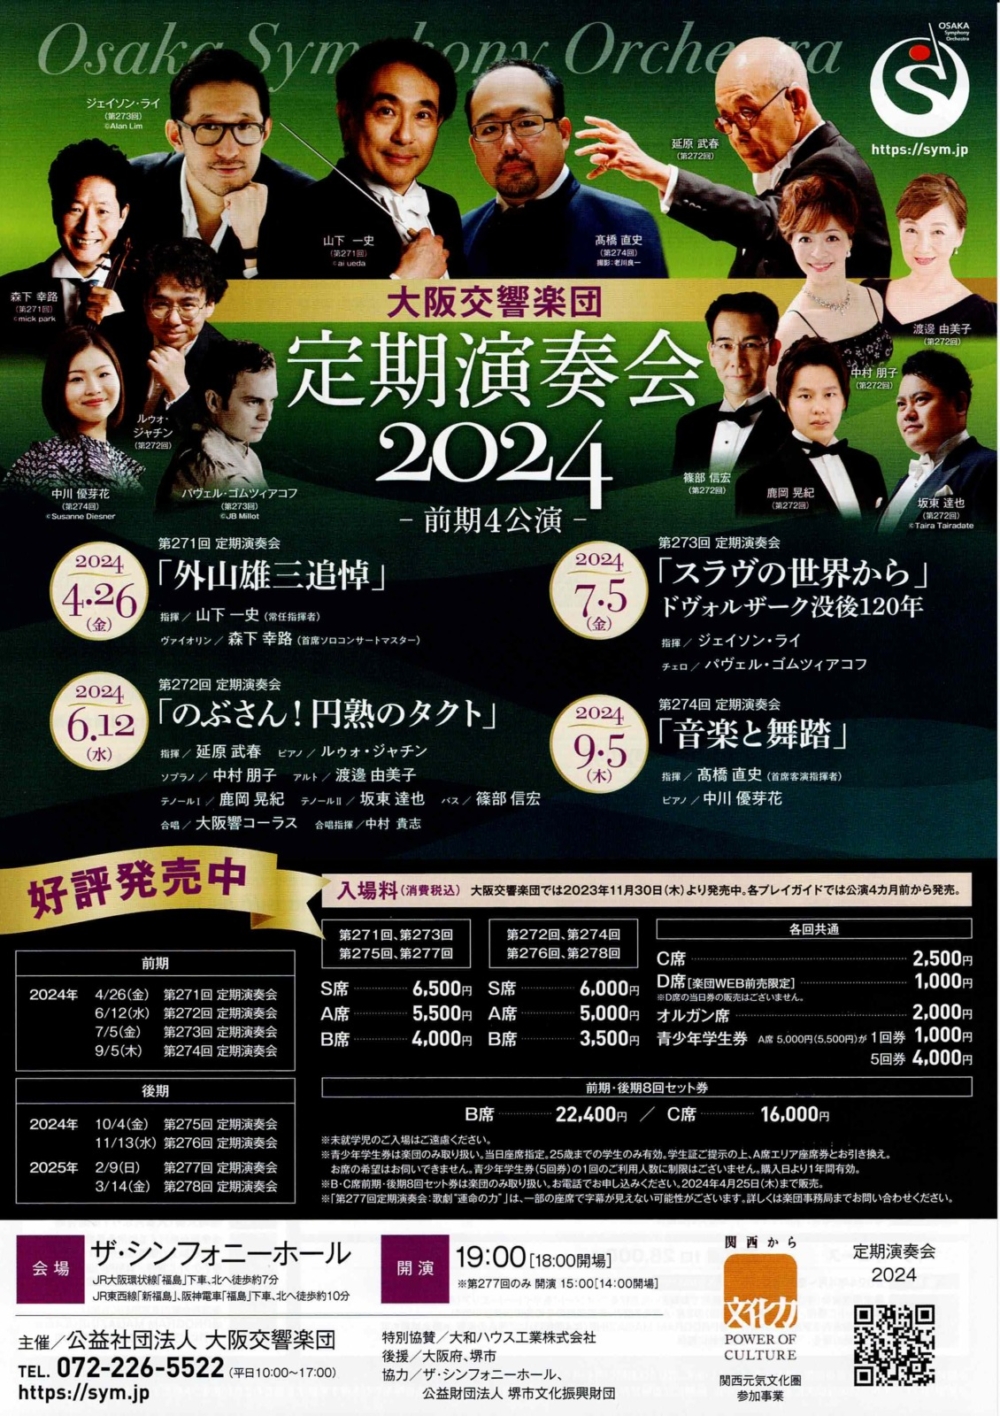 大阪交響楽団第274回定期演奏会「音楽と舞踏」